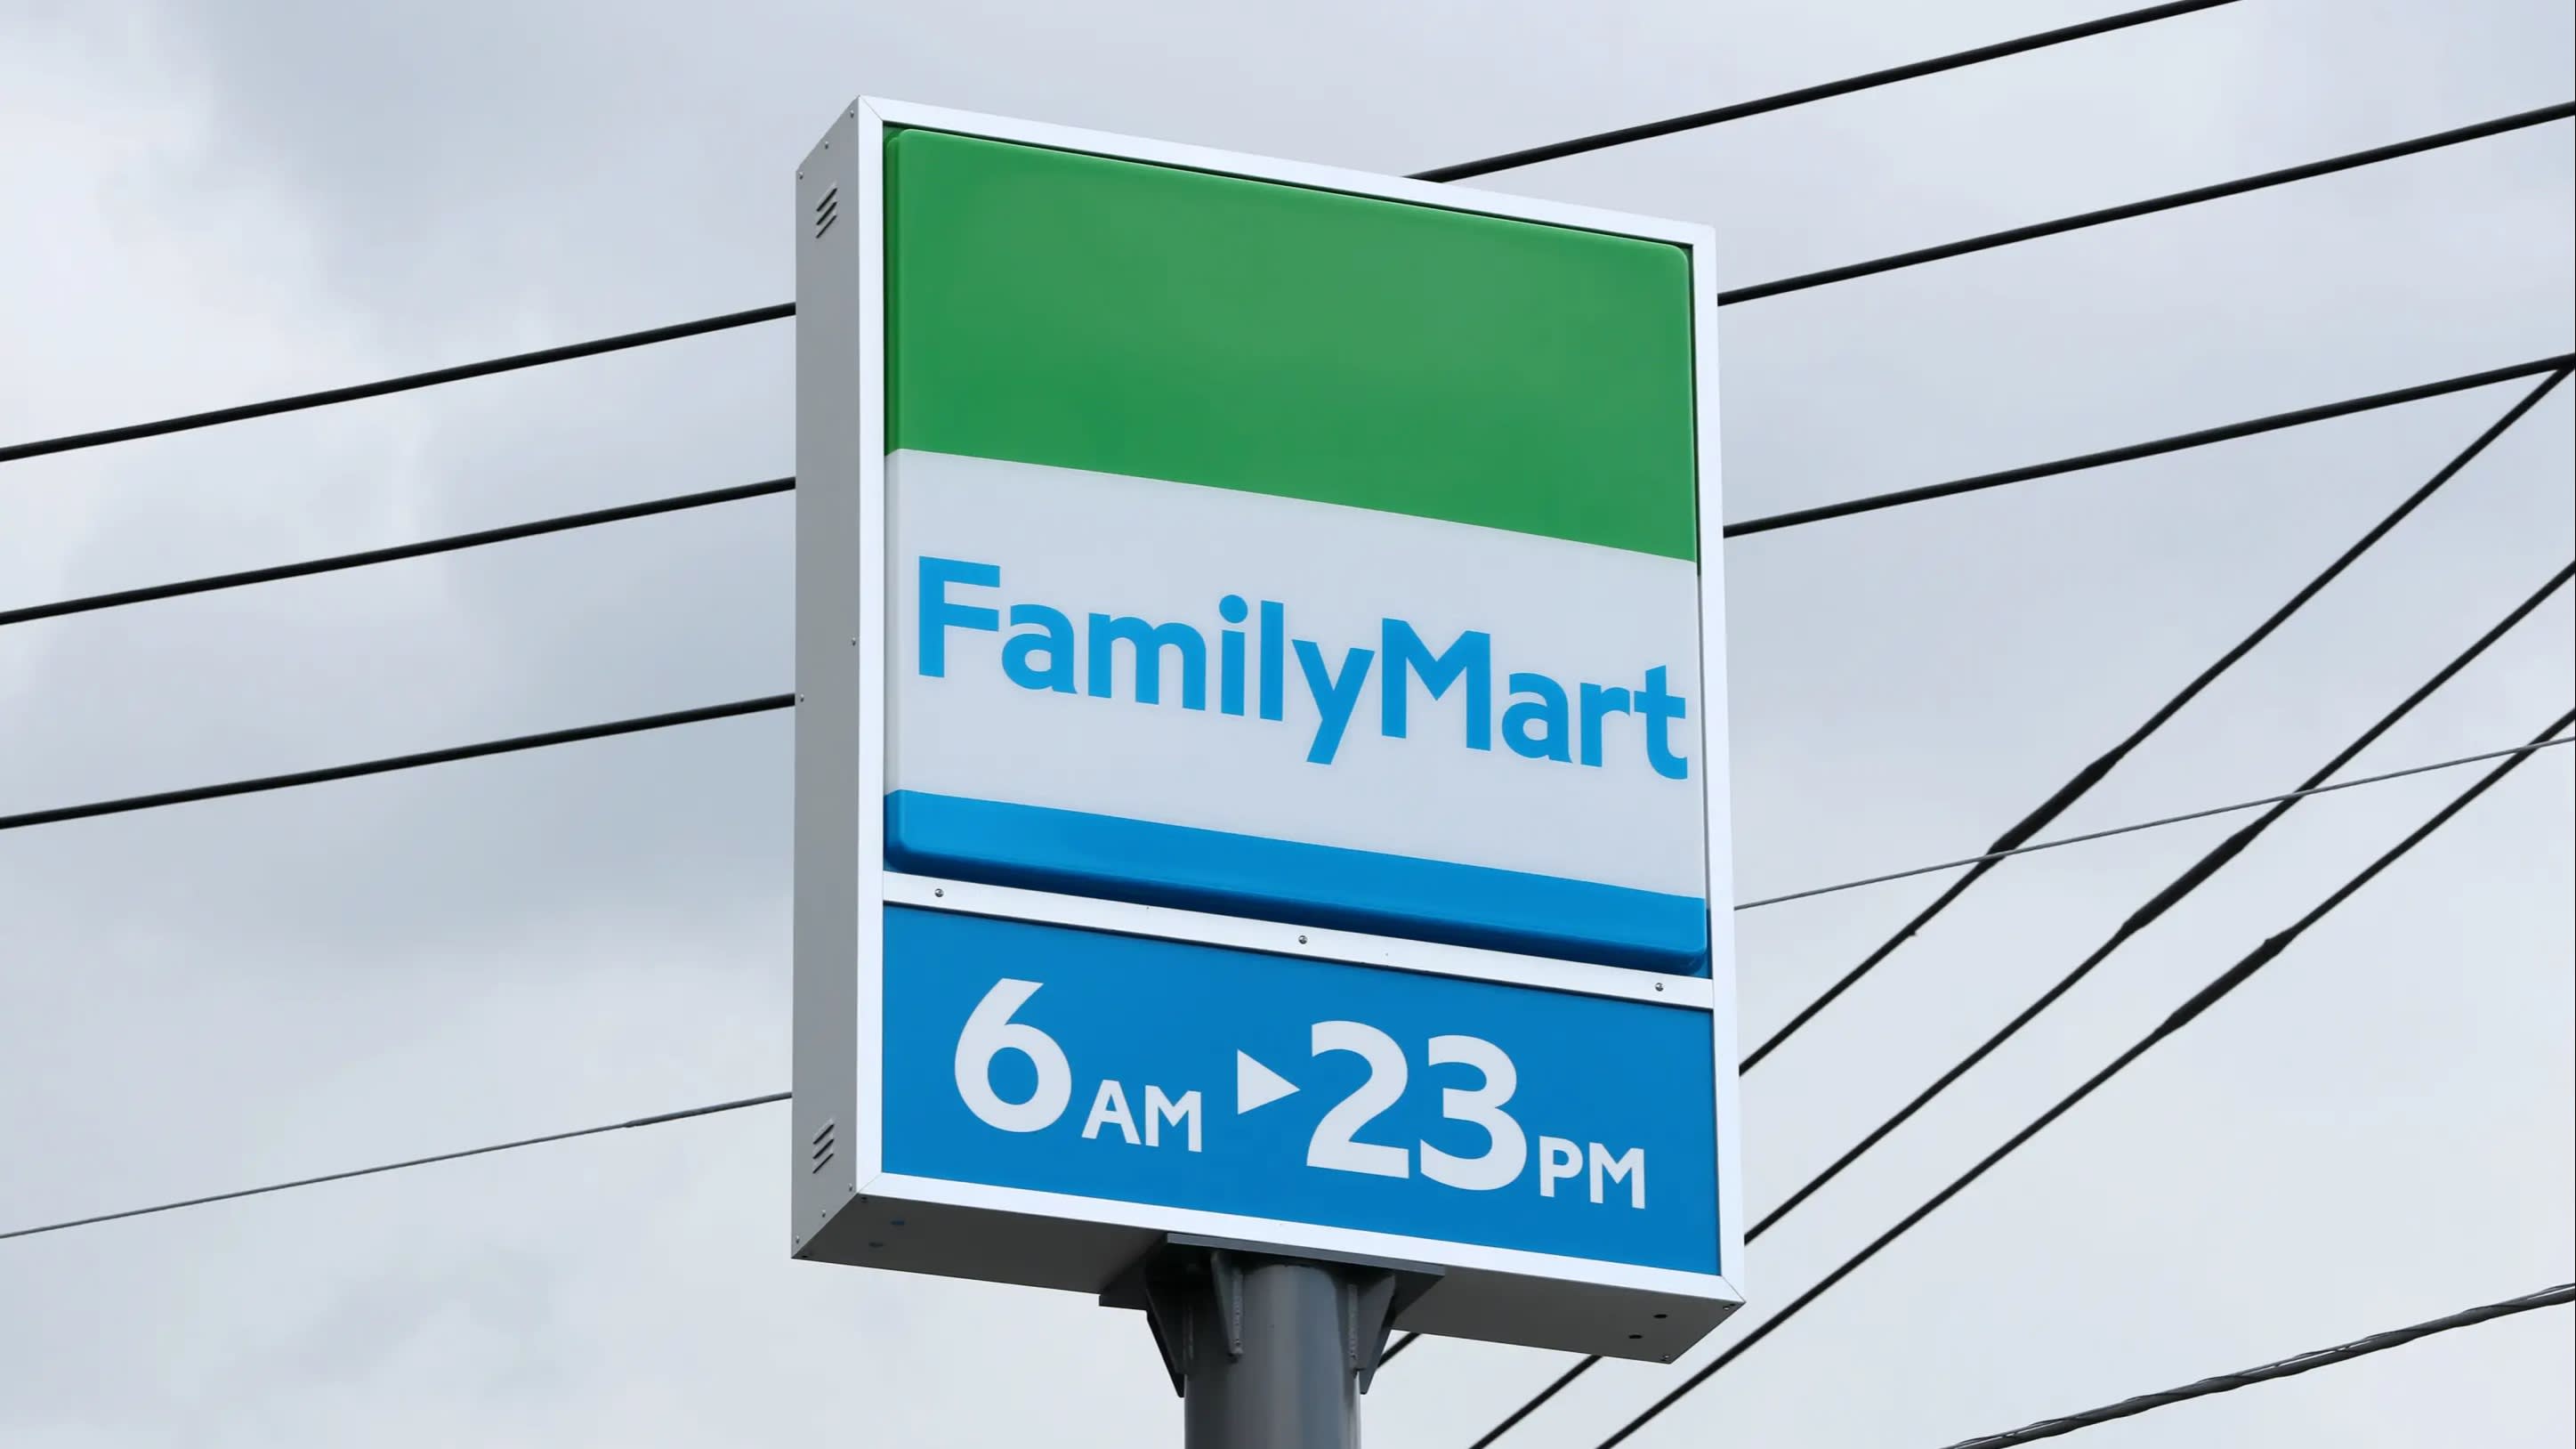 Familymart Logo - Japan's FamilyMart to test alternatives to 24-hour model - Nikkei ...